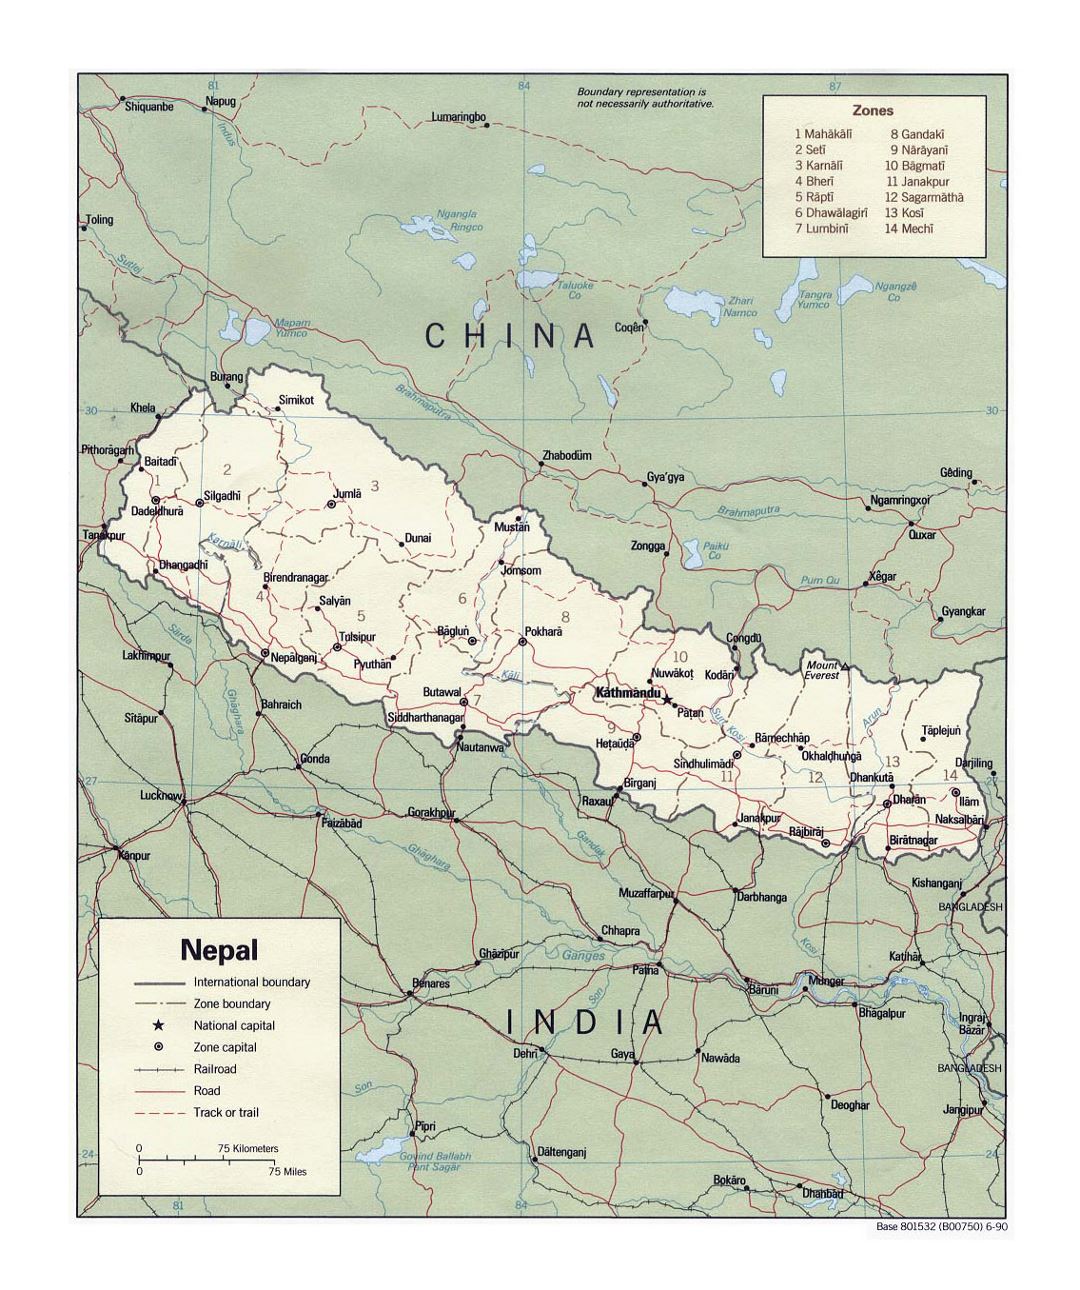 Detallado mapa político y administrativo de Nepal con carreteras, ferrocarriles y principales ciudades - 1990